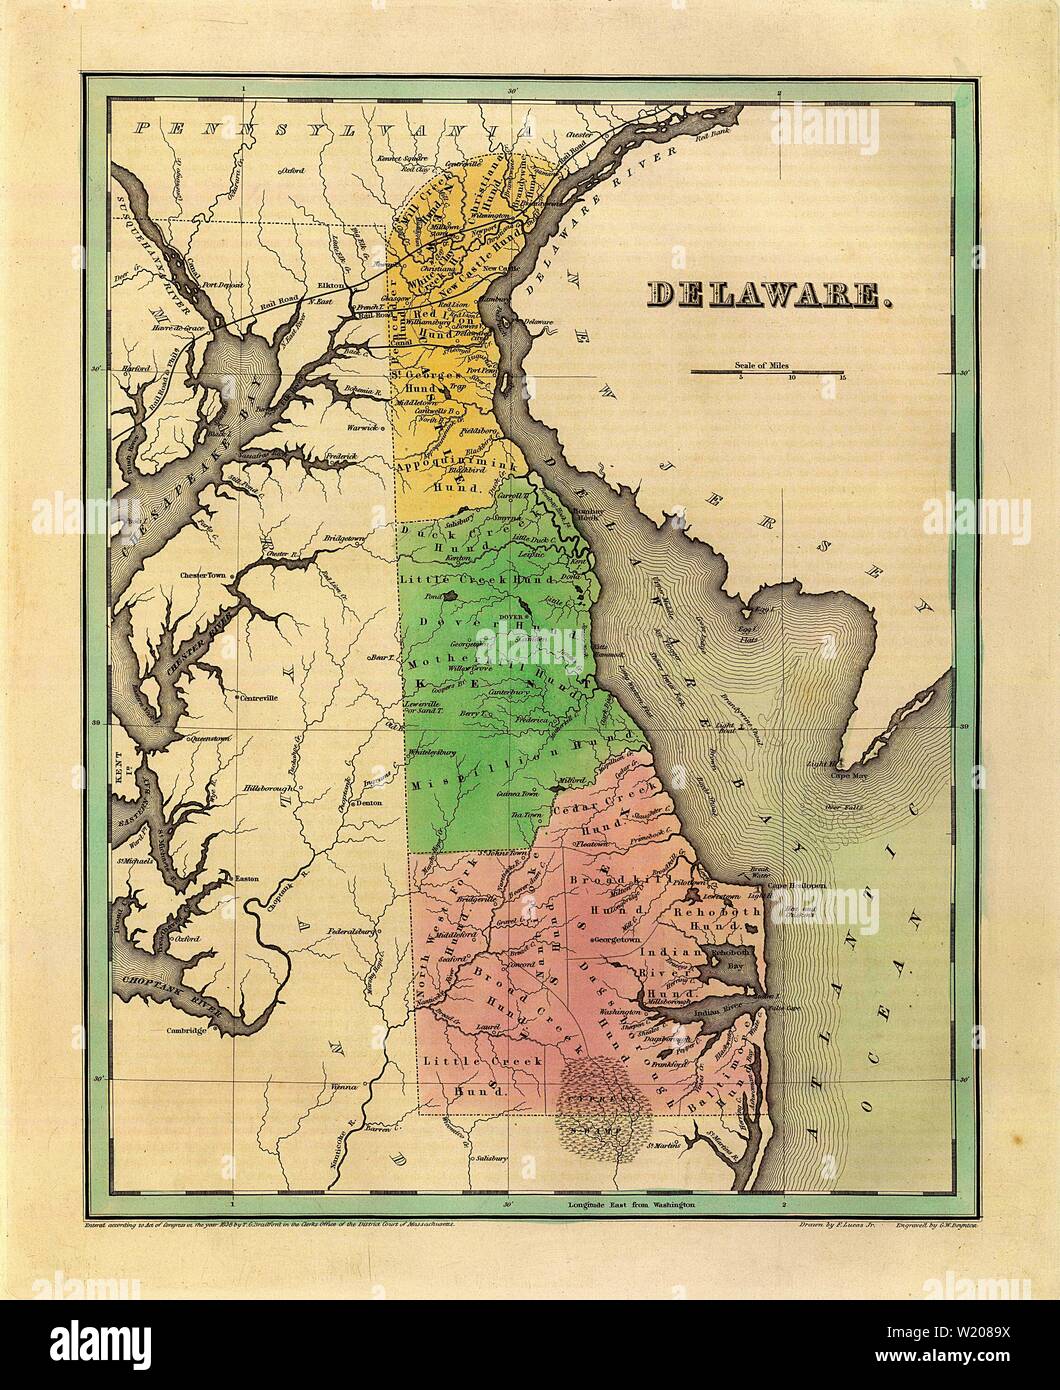 1838 Mappa di Delaware - Vintage Anticharian Mappa di Bradford Foto Stock